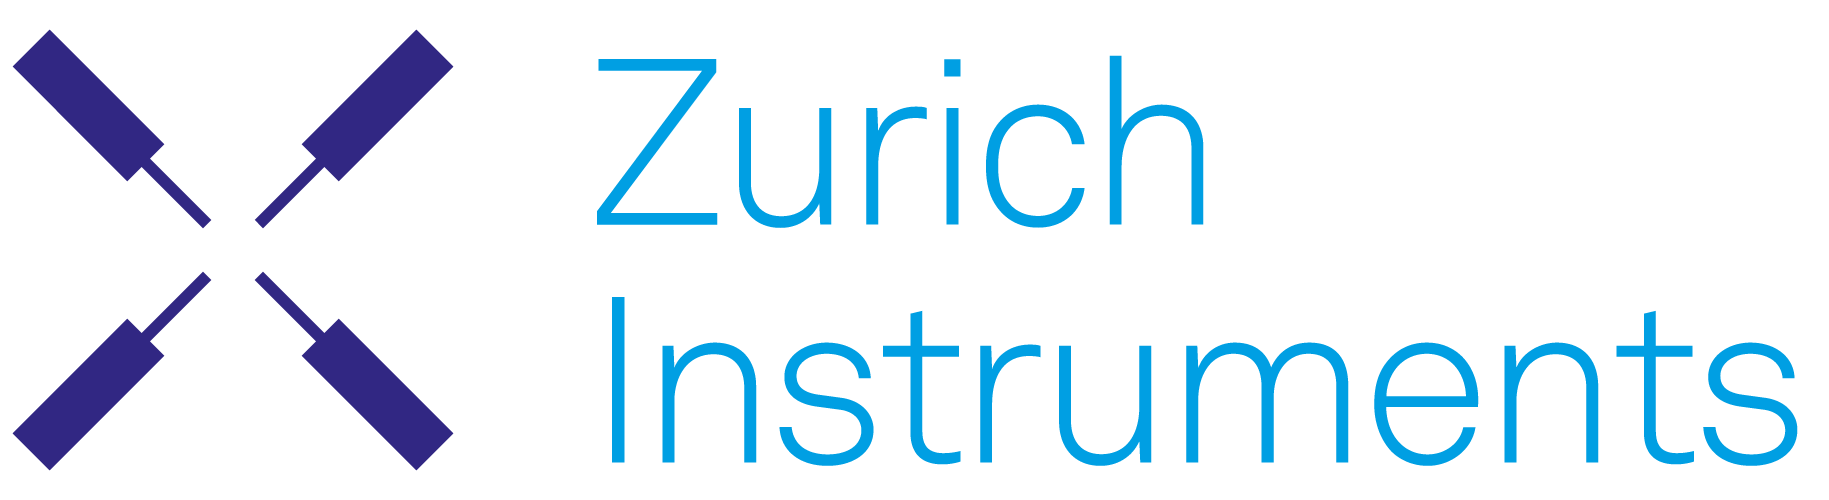 Zürich Instrument